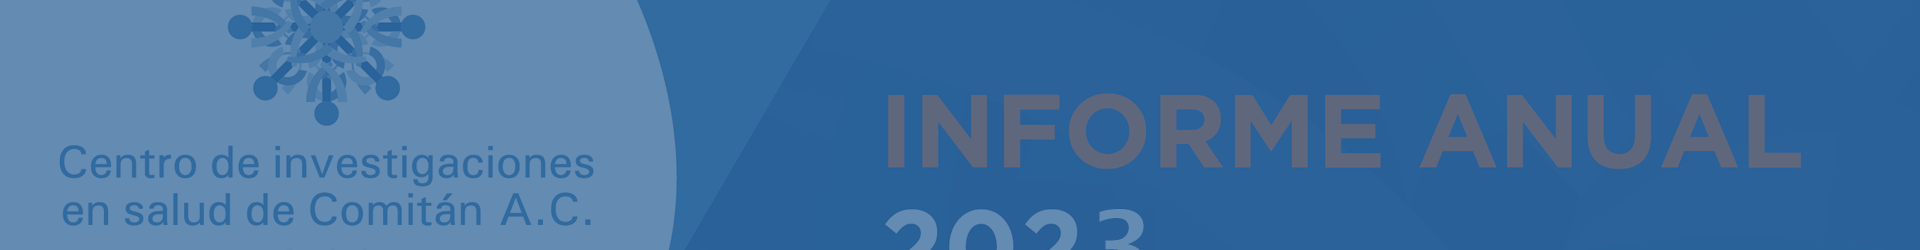 Informe anual de actividades – 2022